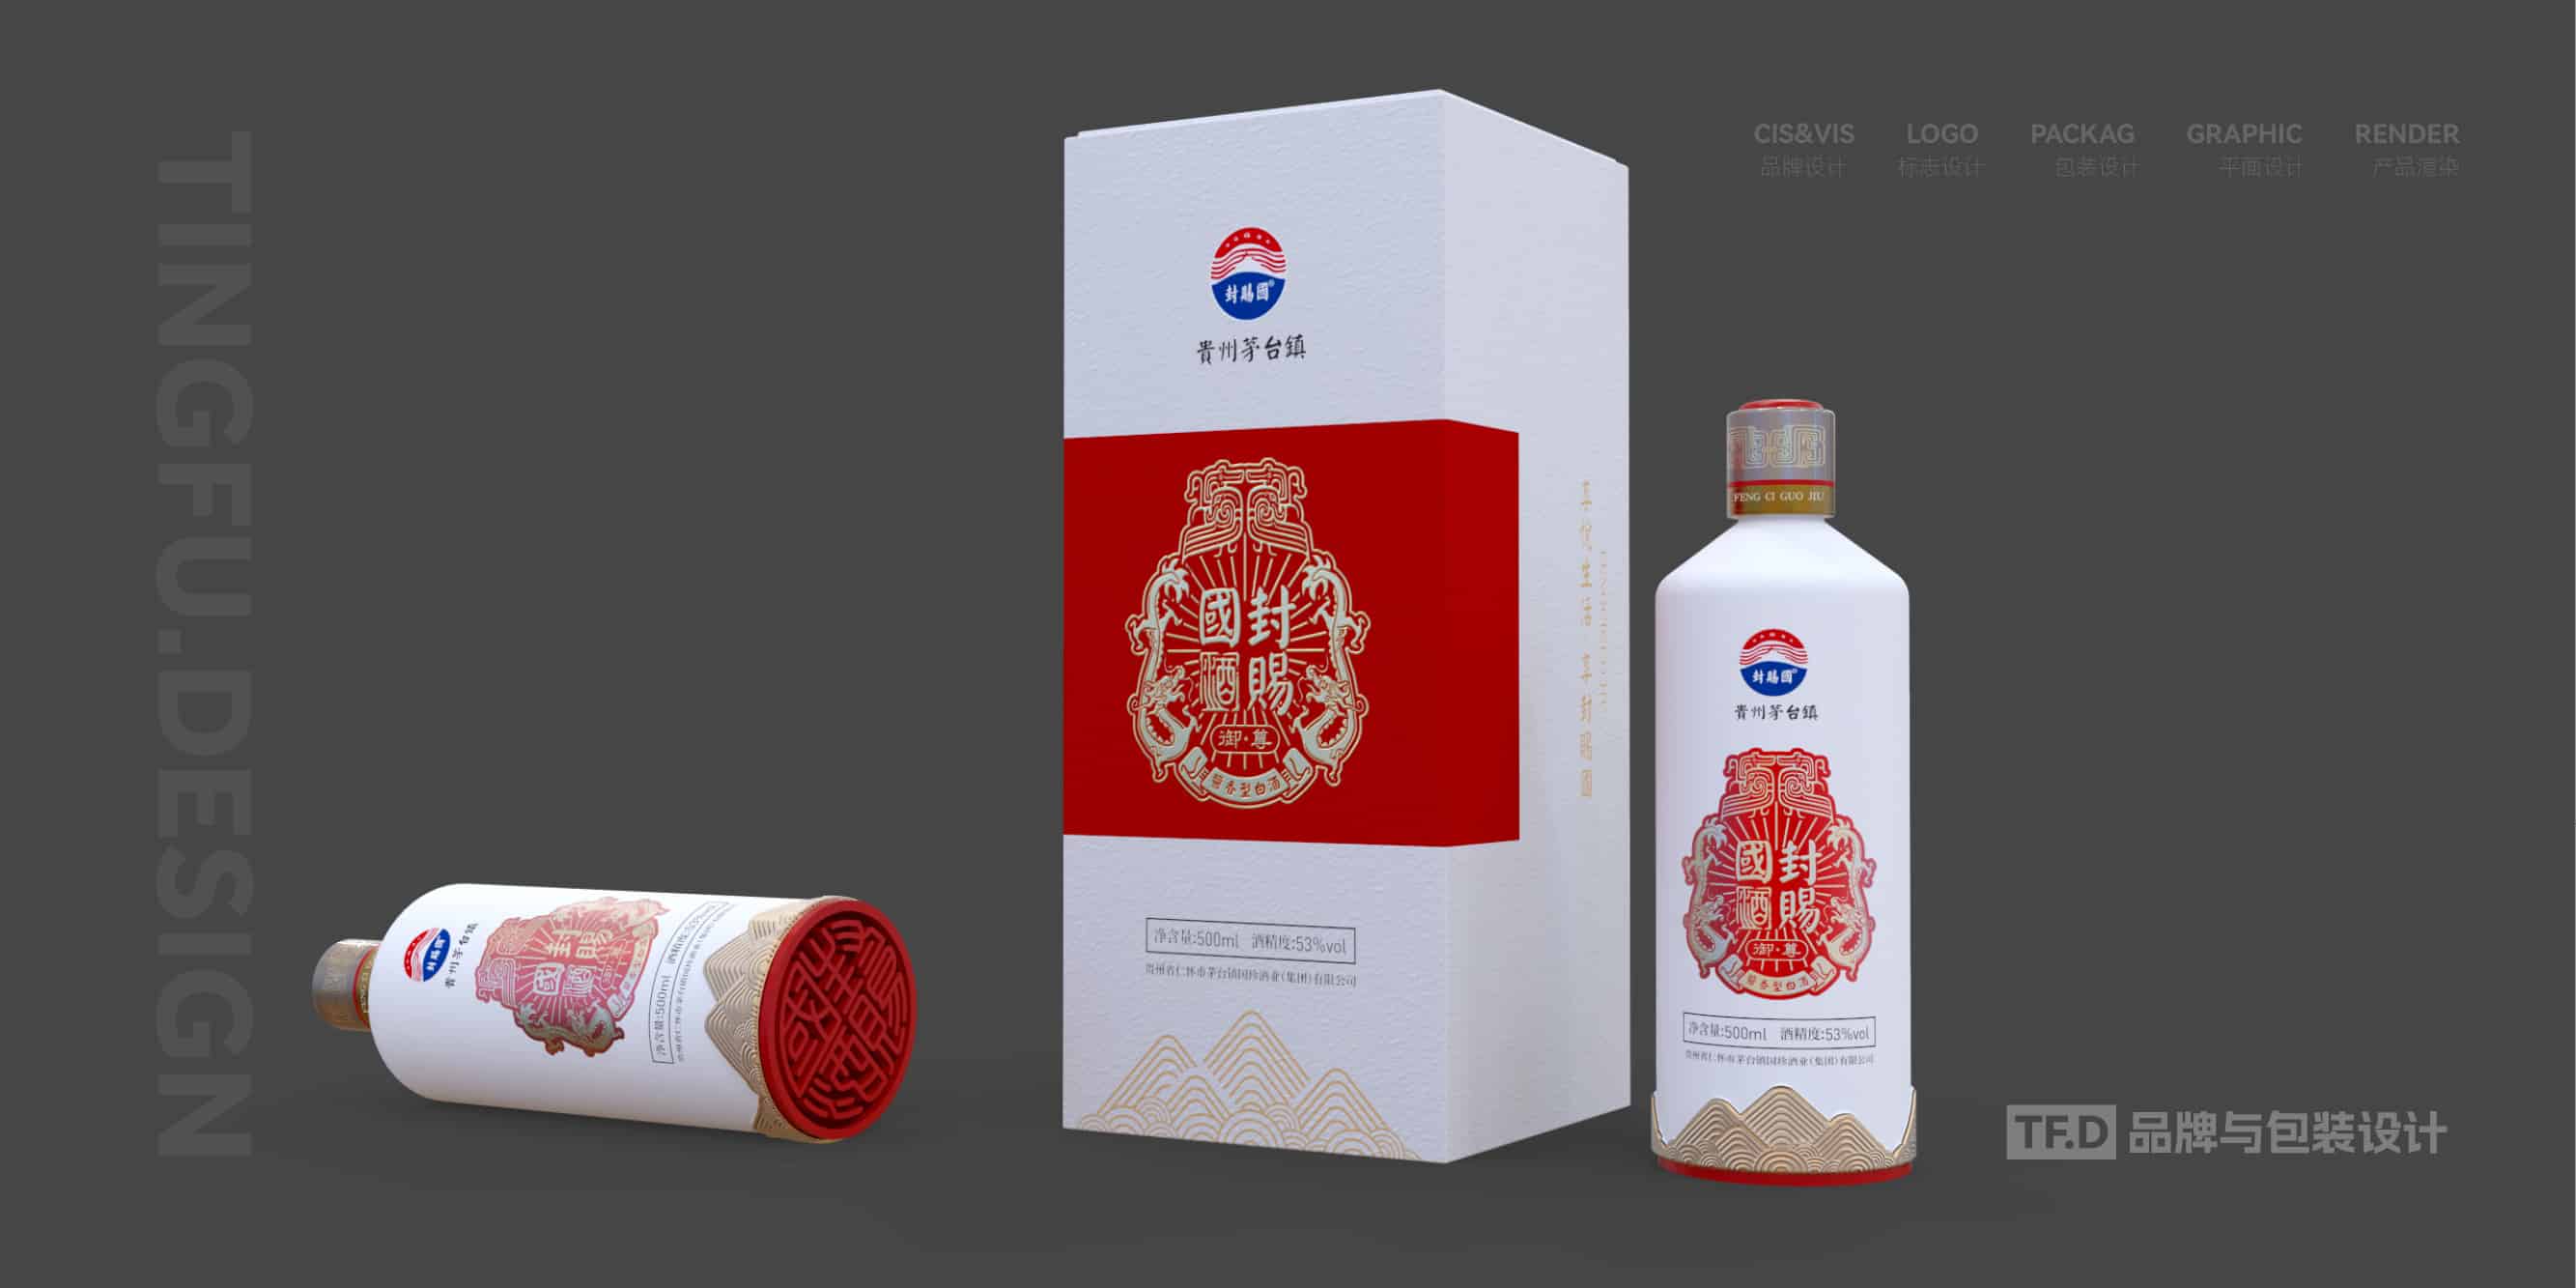 TFD品牌与包装设计-部分酒包装设计案例18-tuya.jpg